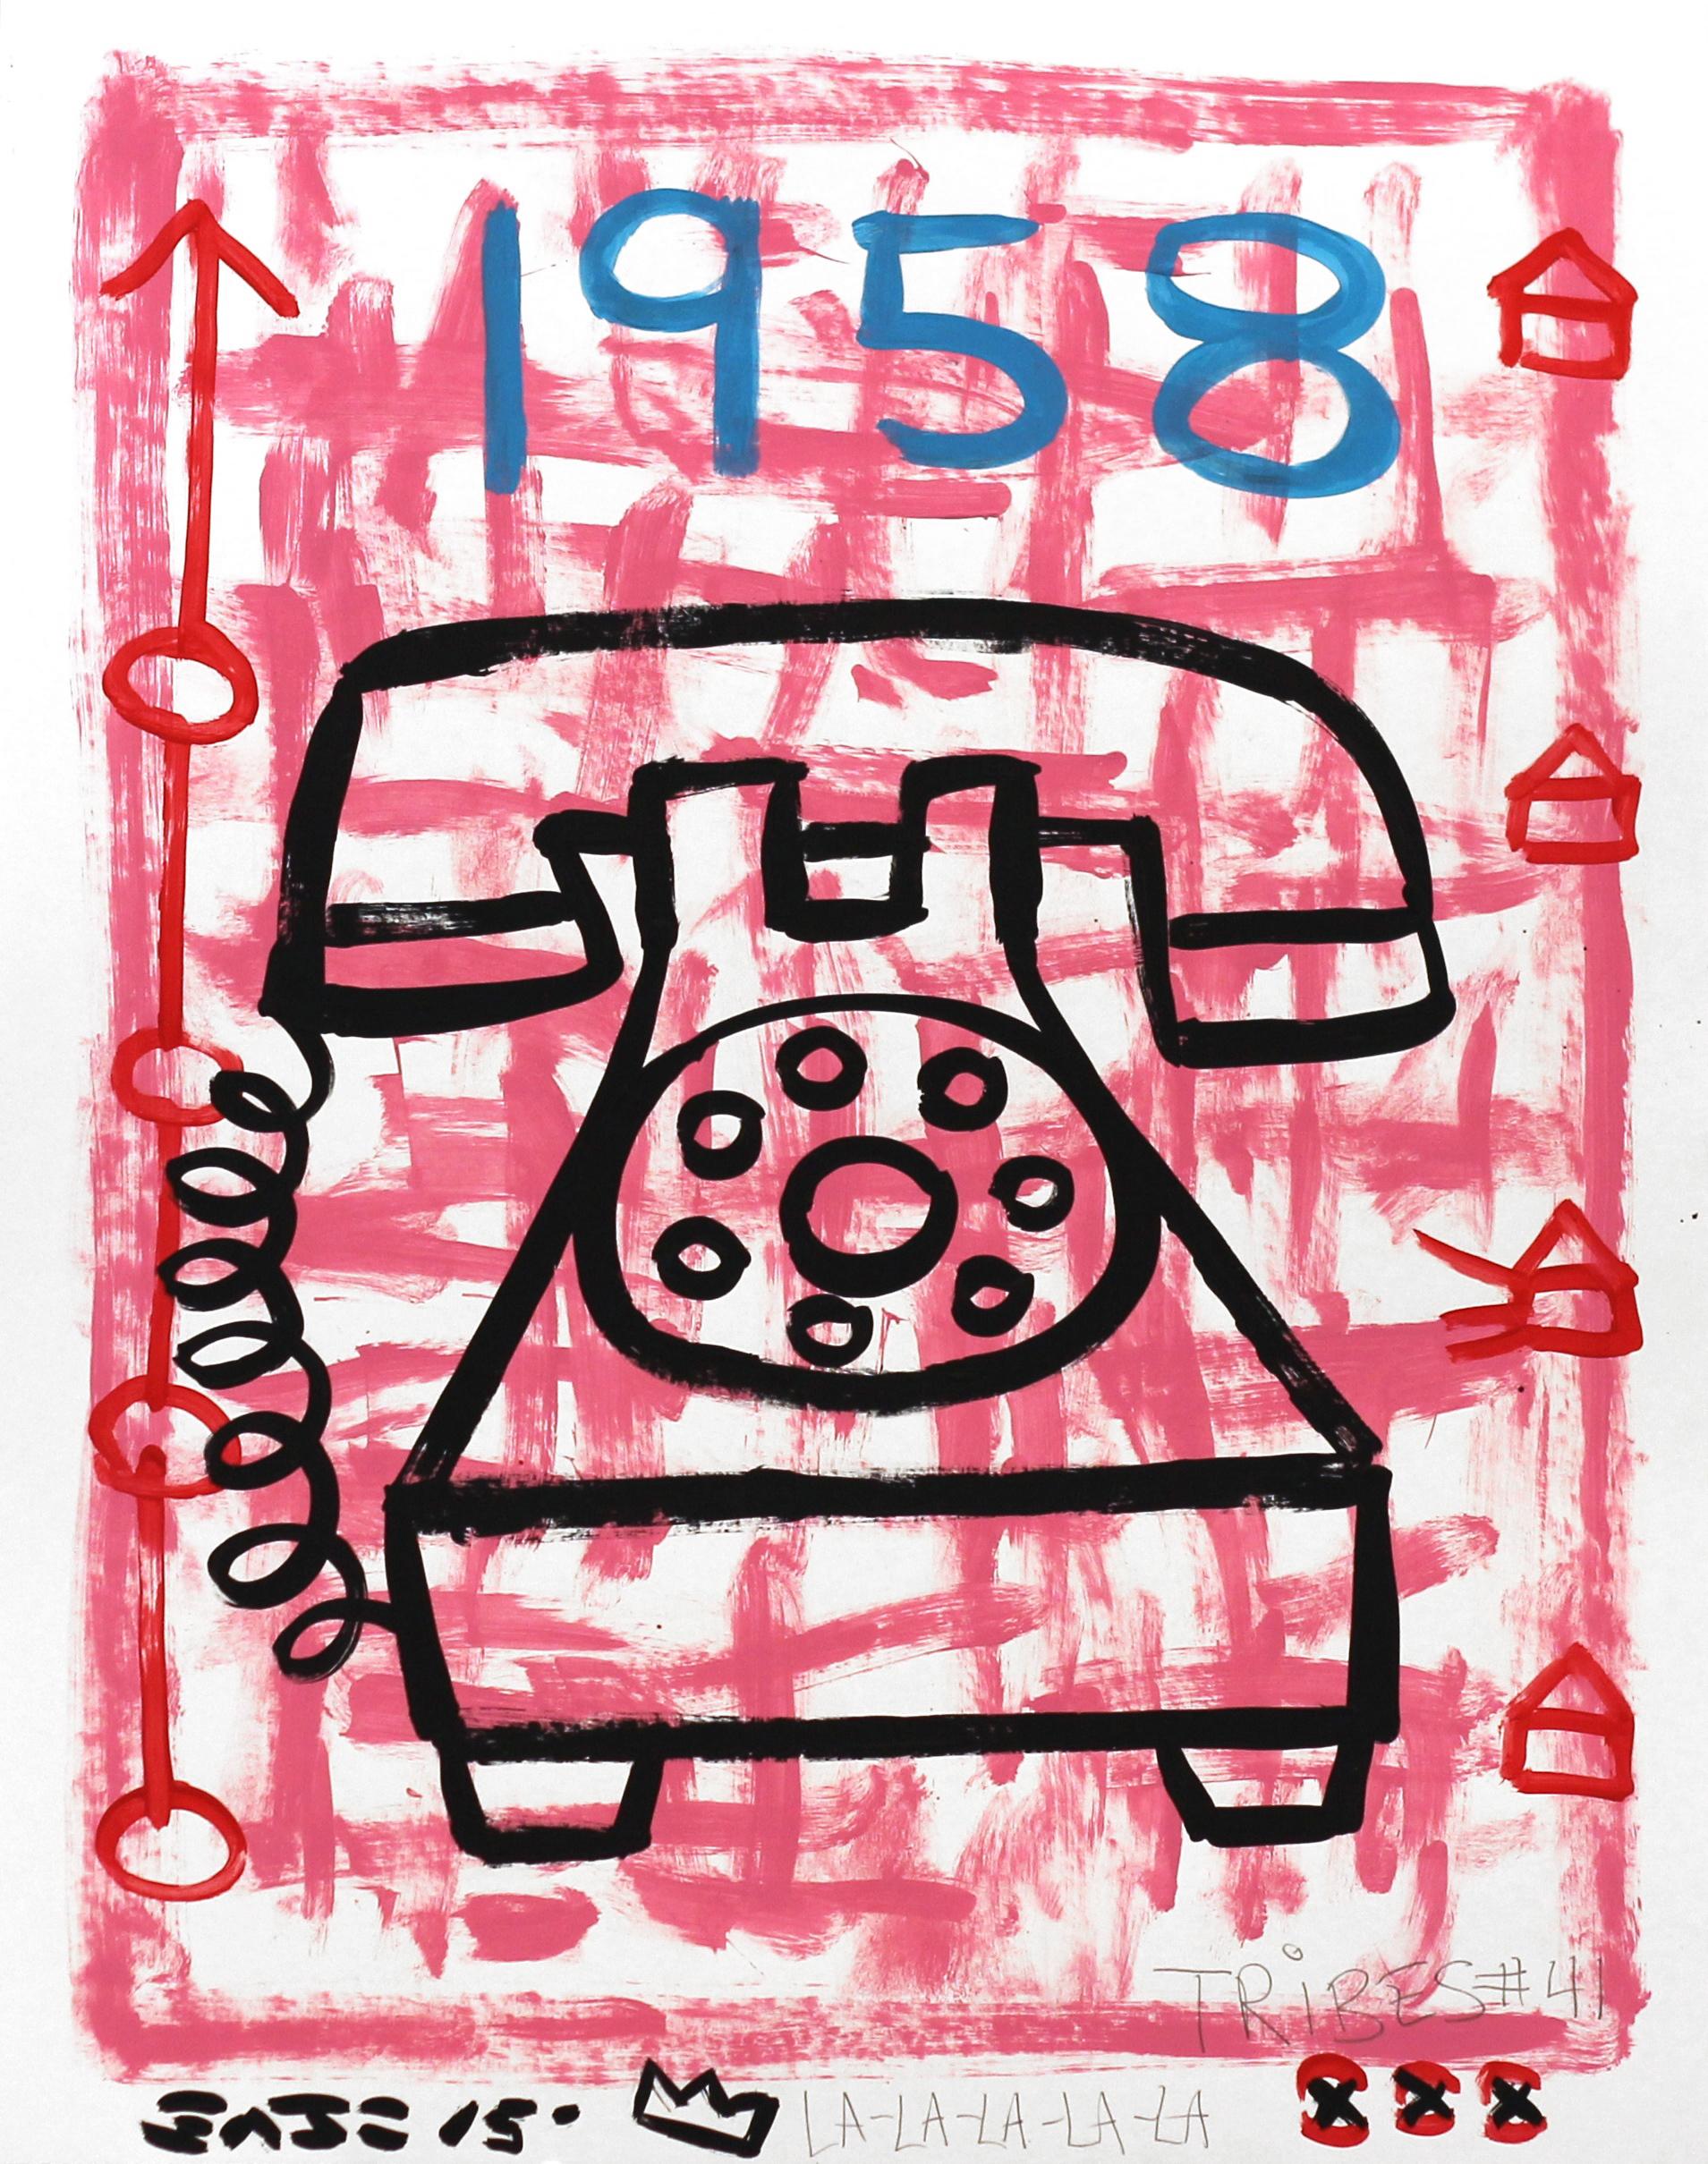 "1958" Zeitgenössisches rotes Festnetztelefon, inspiriert von Pop Art von Gary John